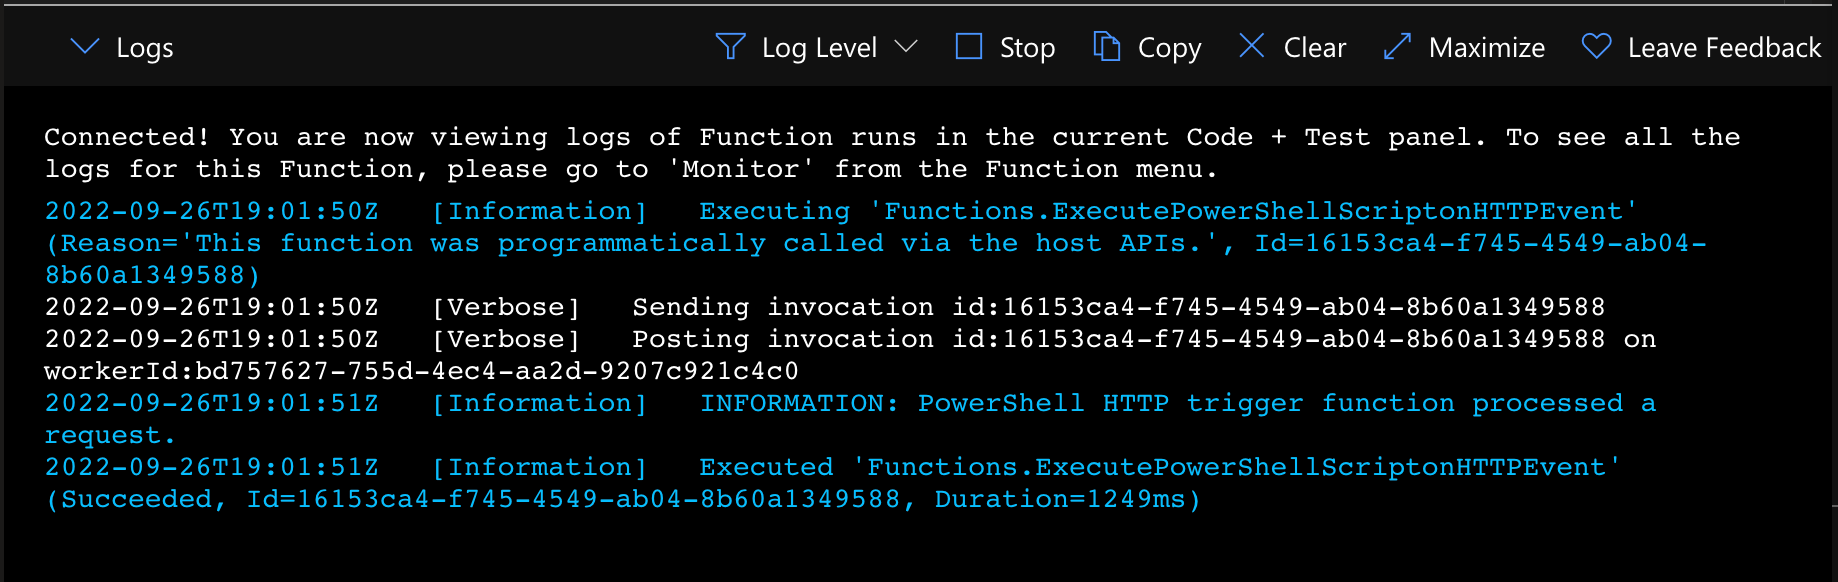 Monitoring Azure Function logs